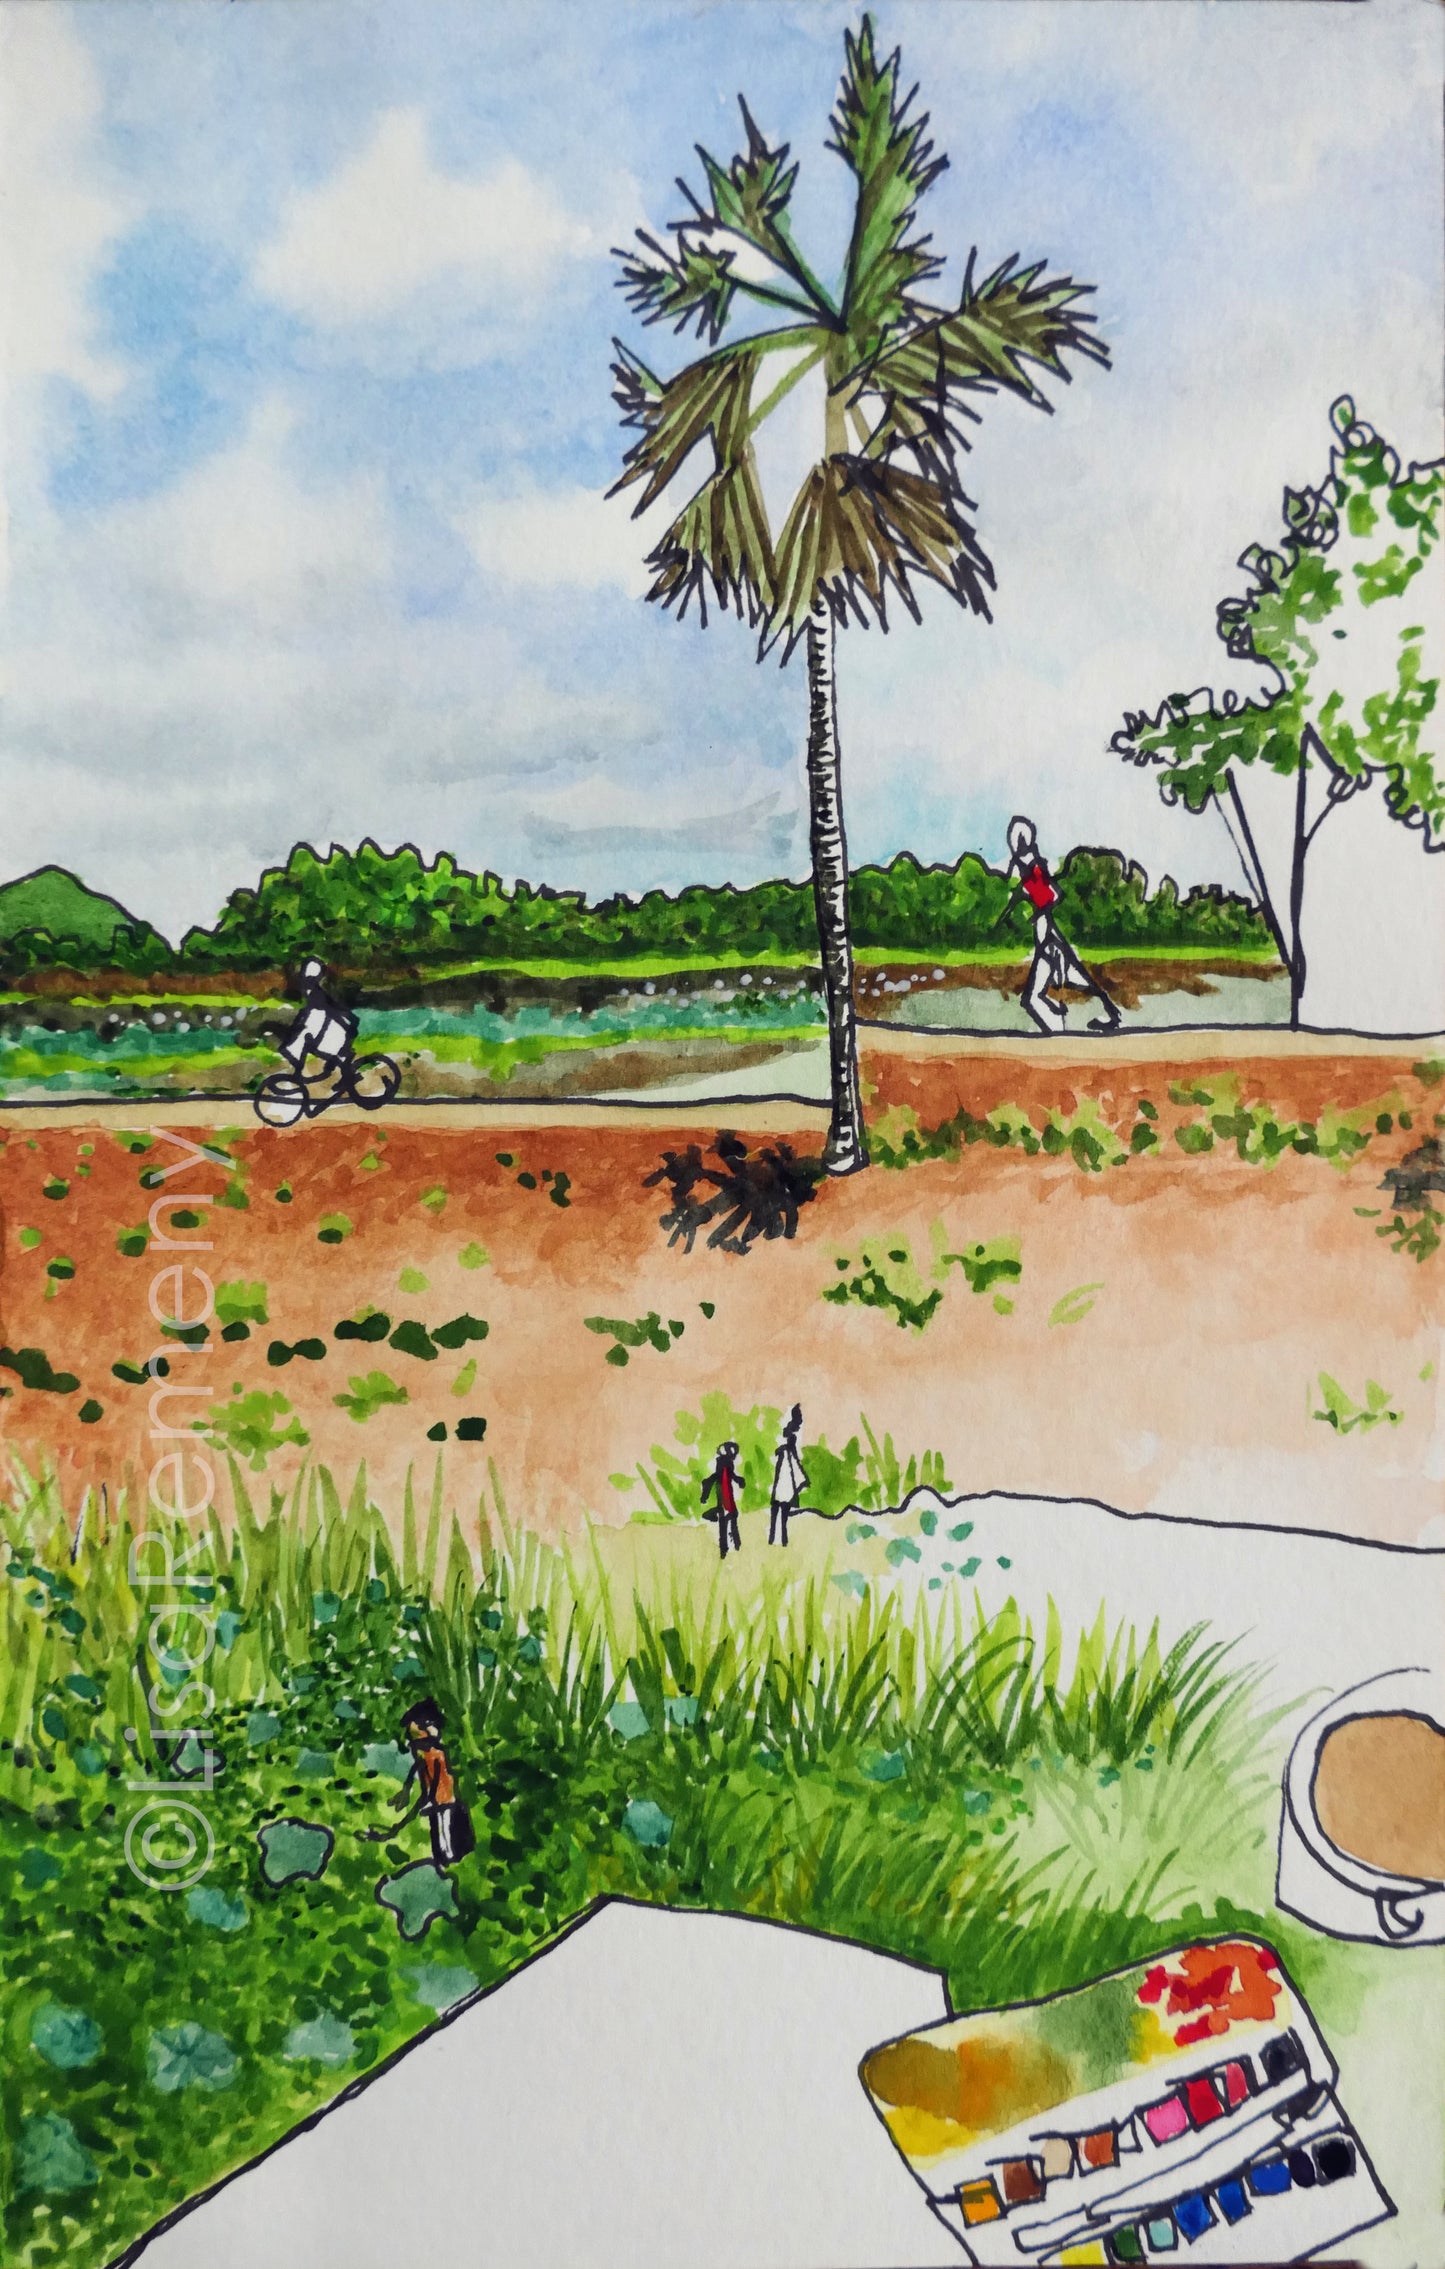 Watercolor & Ink on Paper - Lotus Fields in Sri Lanka